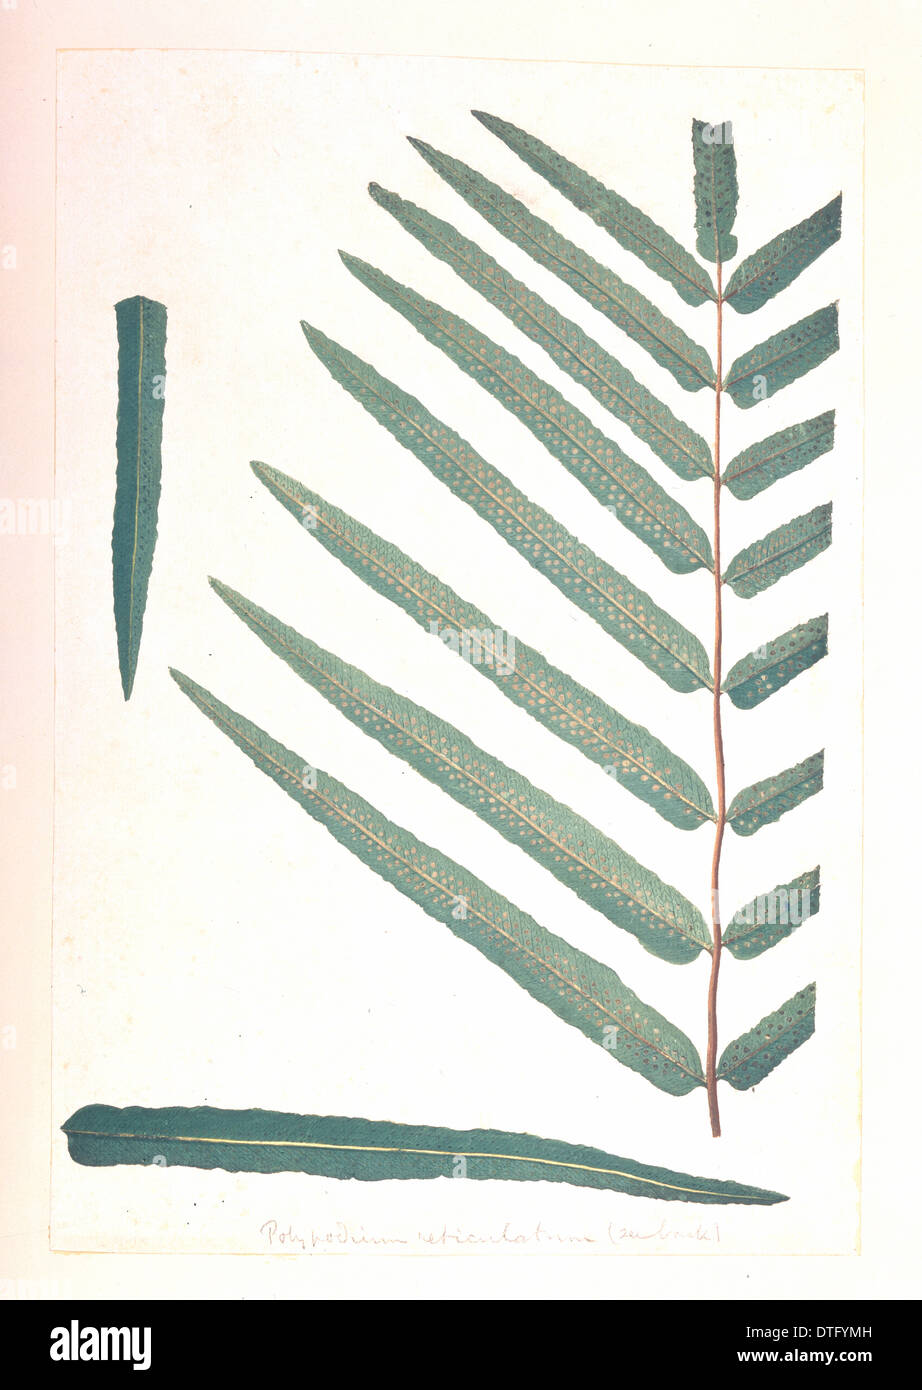 Meniscium reticulatum, giant reticulated fern Stock Photo